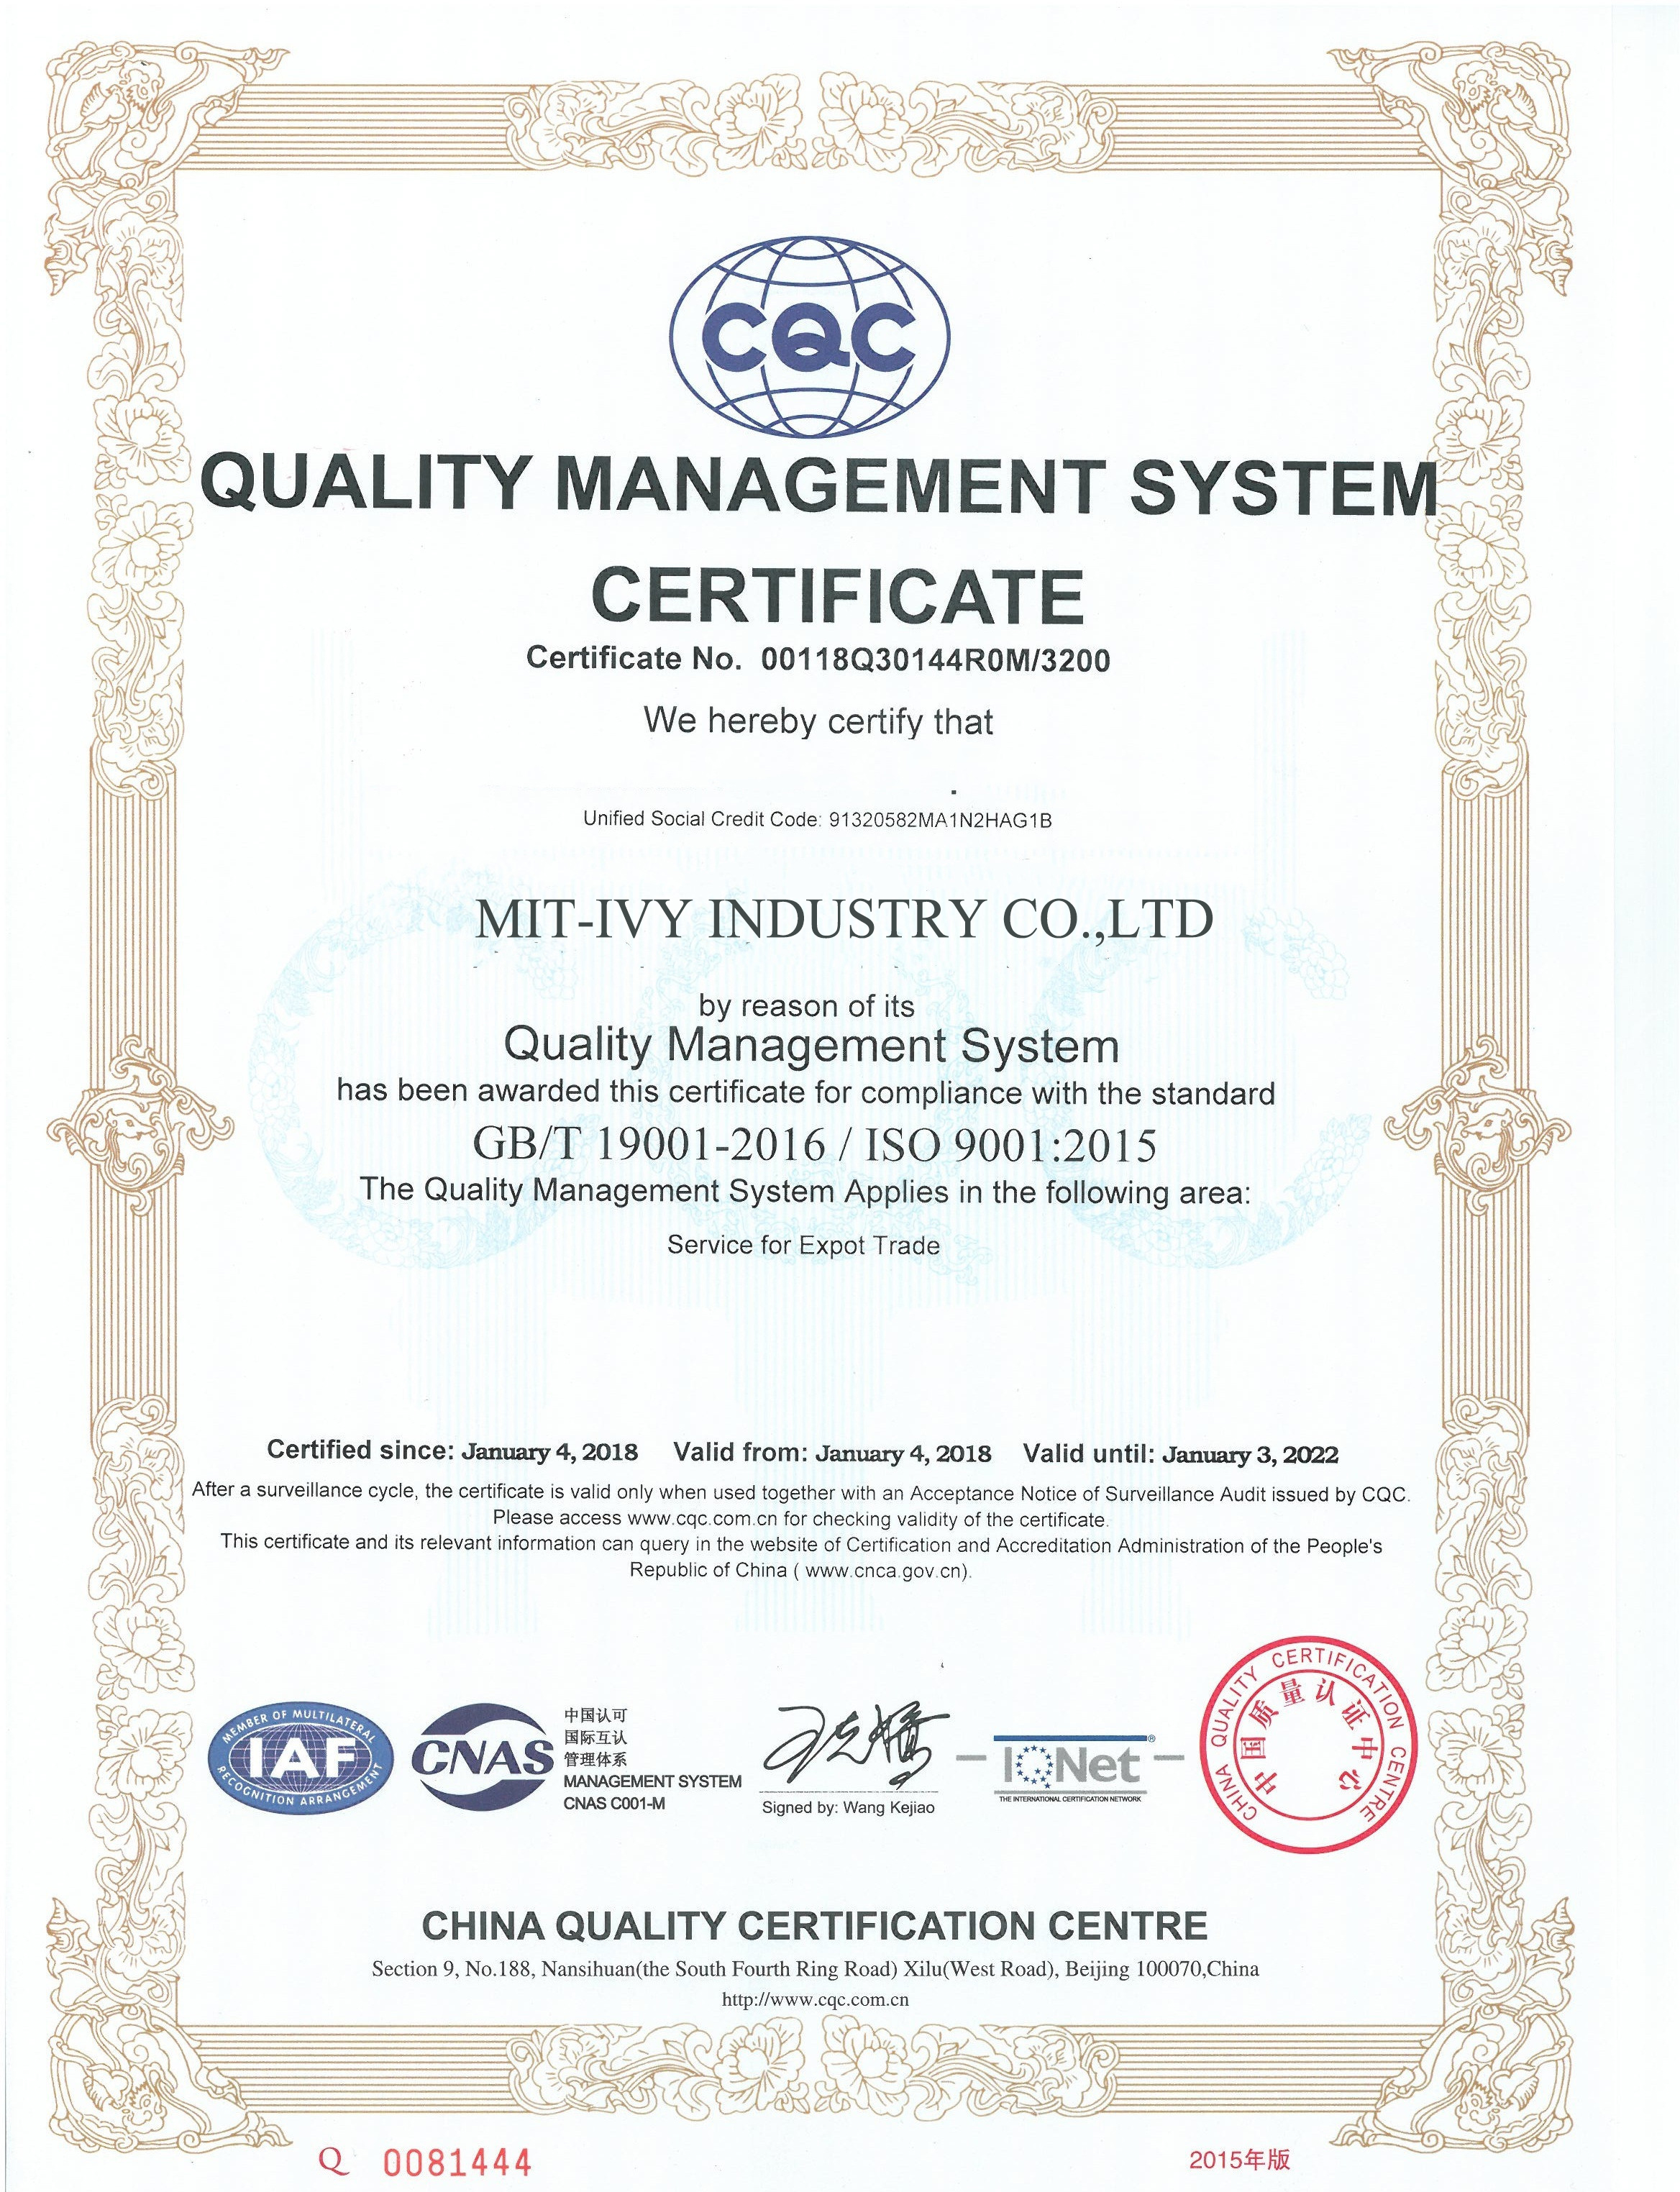 Mit-Ivy Certificate